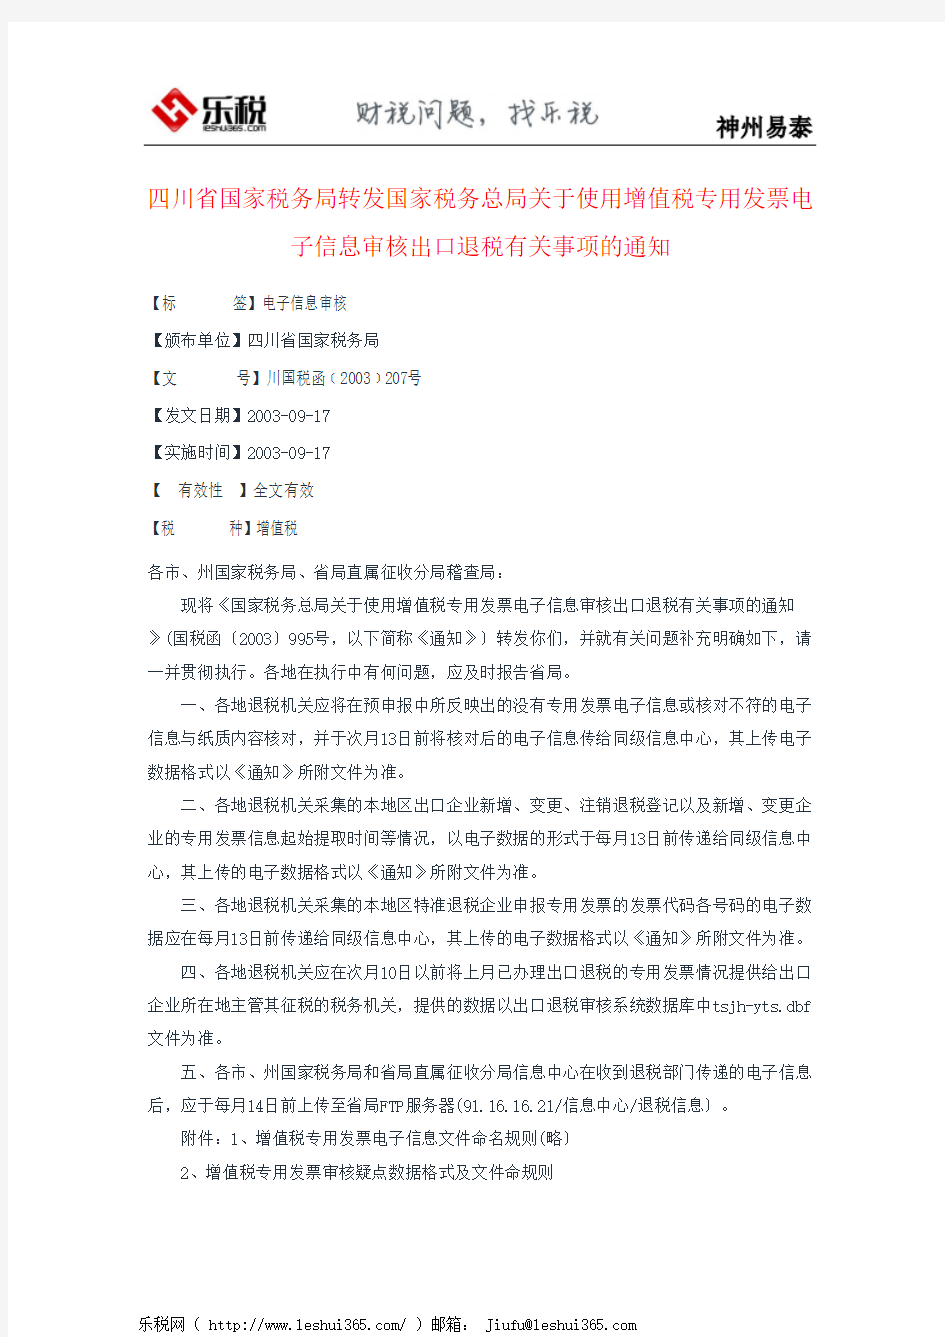 四川省国家税务局转发国家税务总局关于使用增值税专用发票电子信